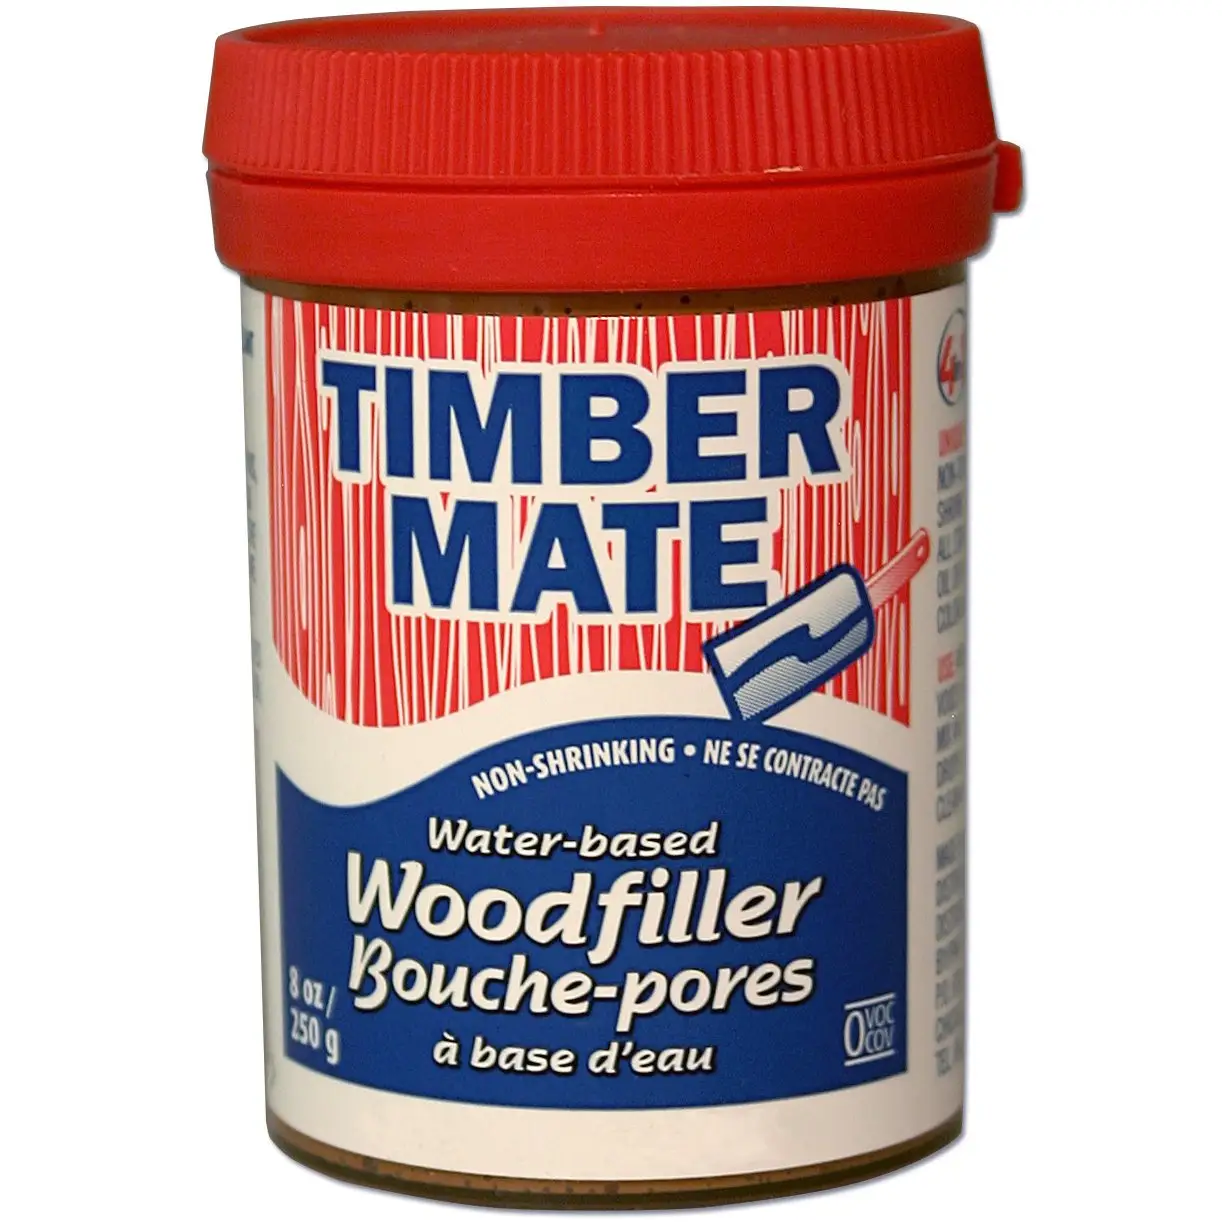 Timber mate Paint able Wasser basierter Kitt füller Dichtung reparatur paste Holz füller für Böden